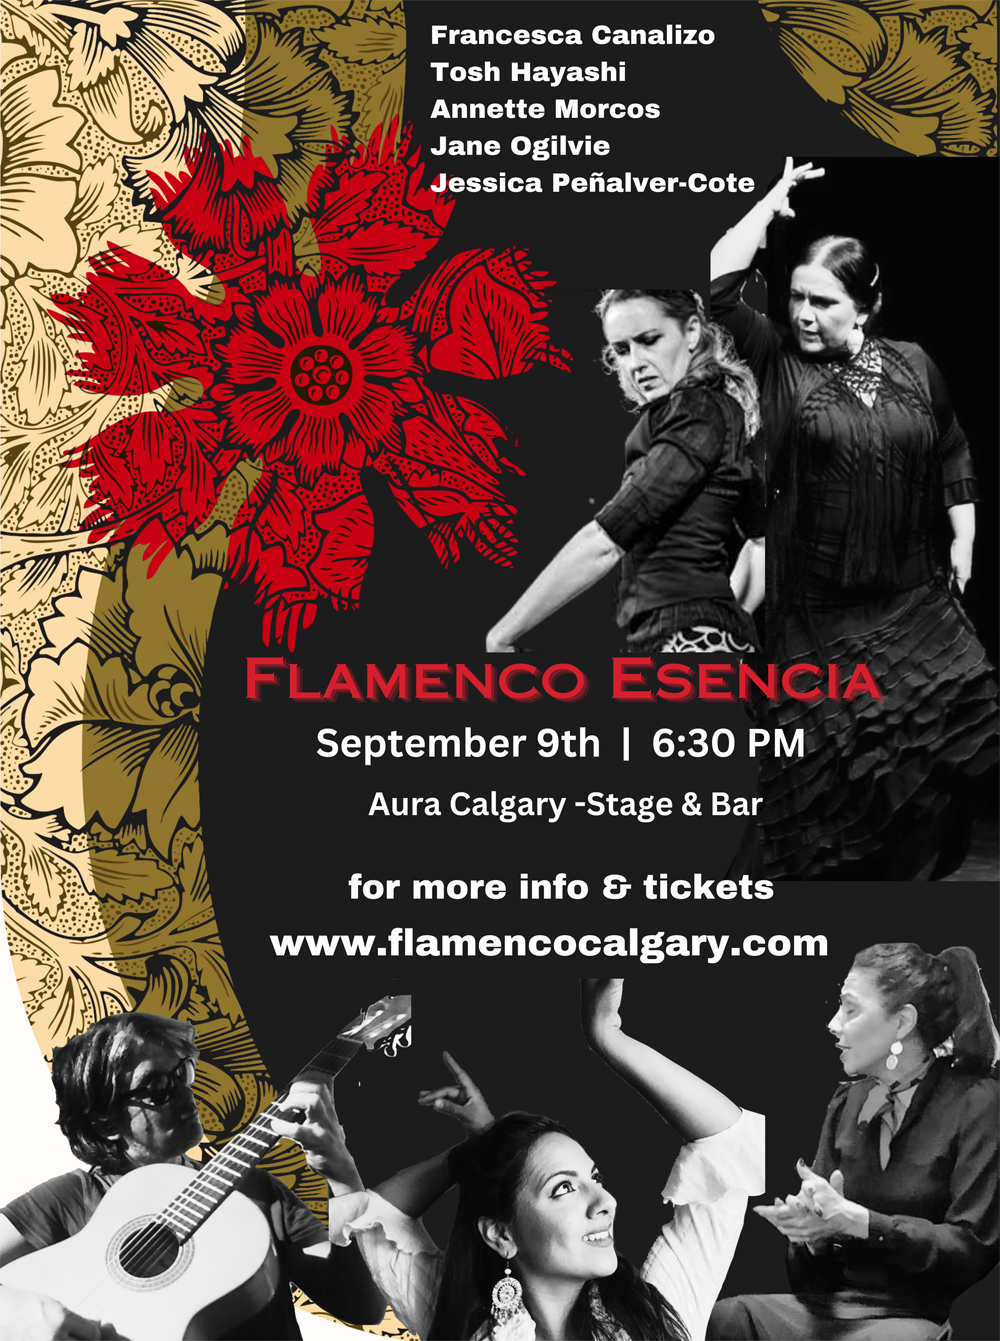 Flamenco Esencia